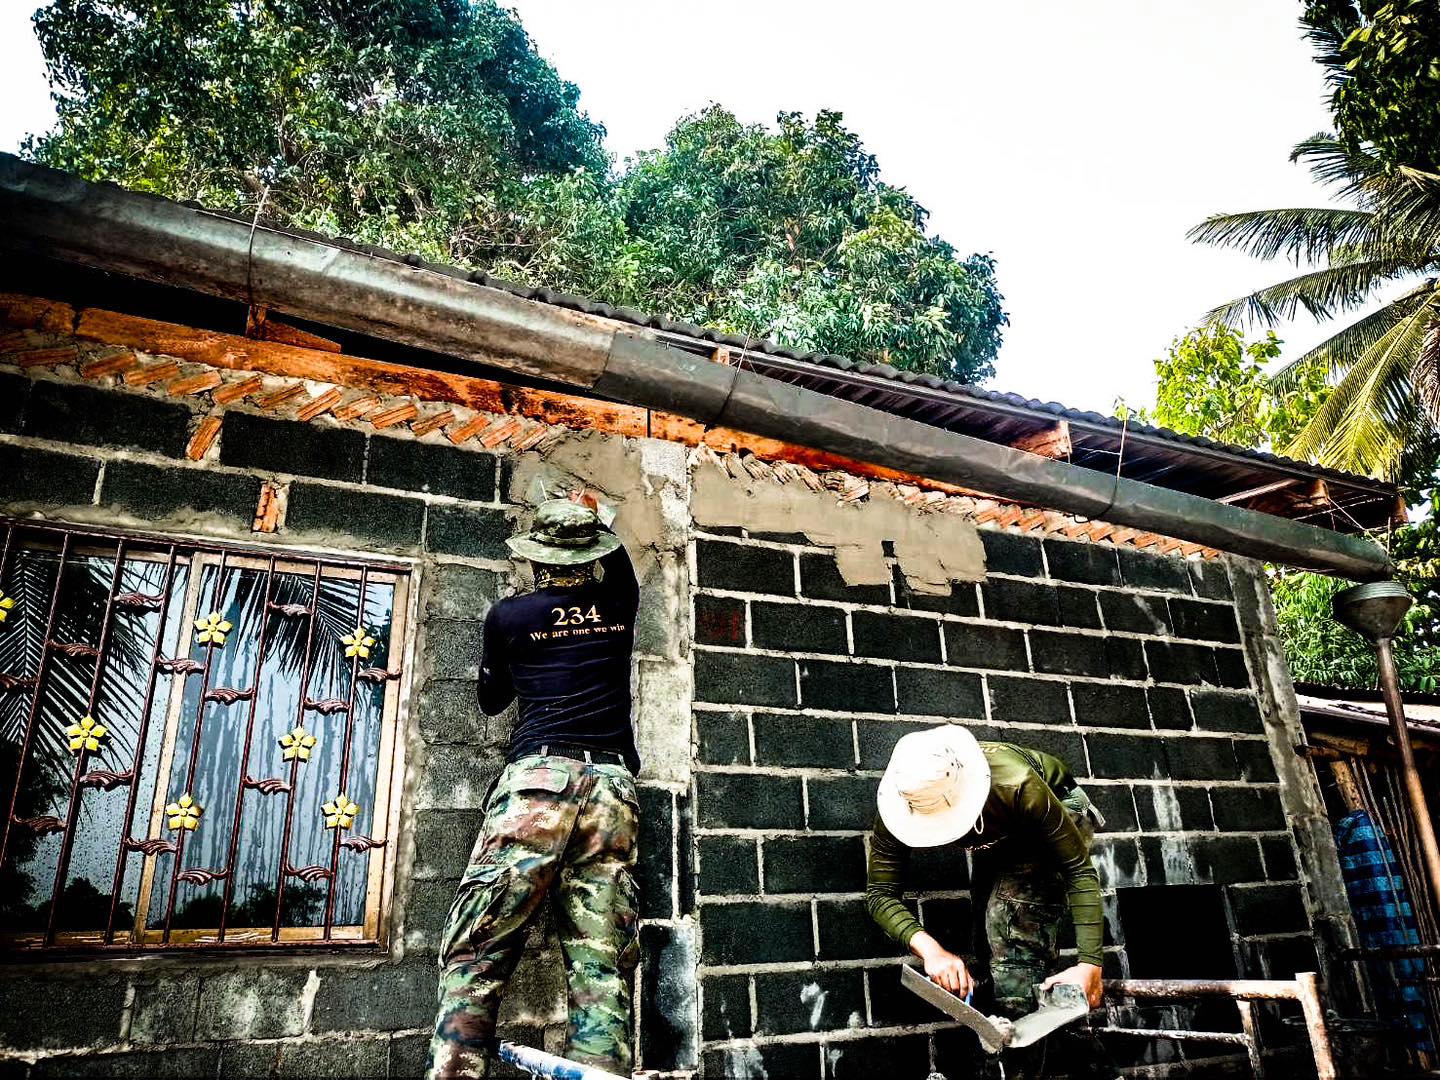 “ทหารชายแดน ร่วมแรง ร่วมใจ ปรับปรุงซ่อมแซมบ้านผู้ยากไร้”